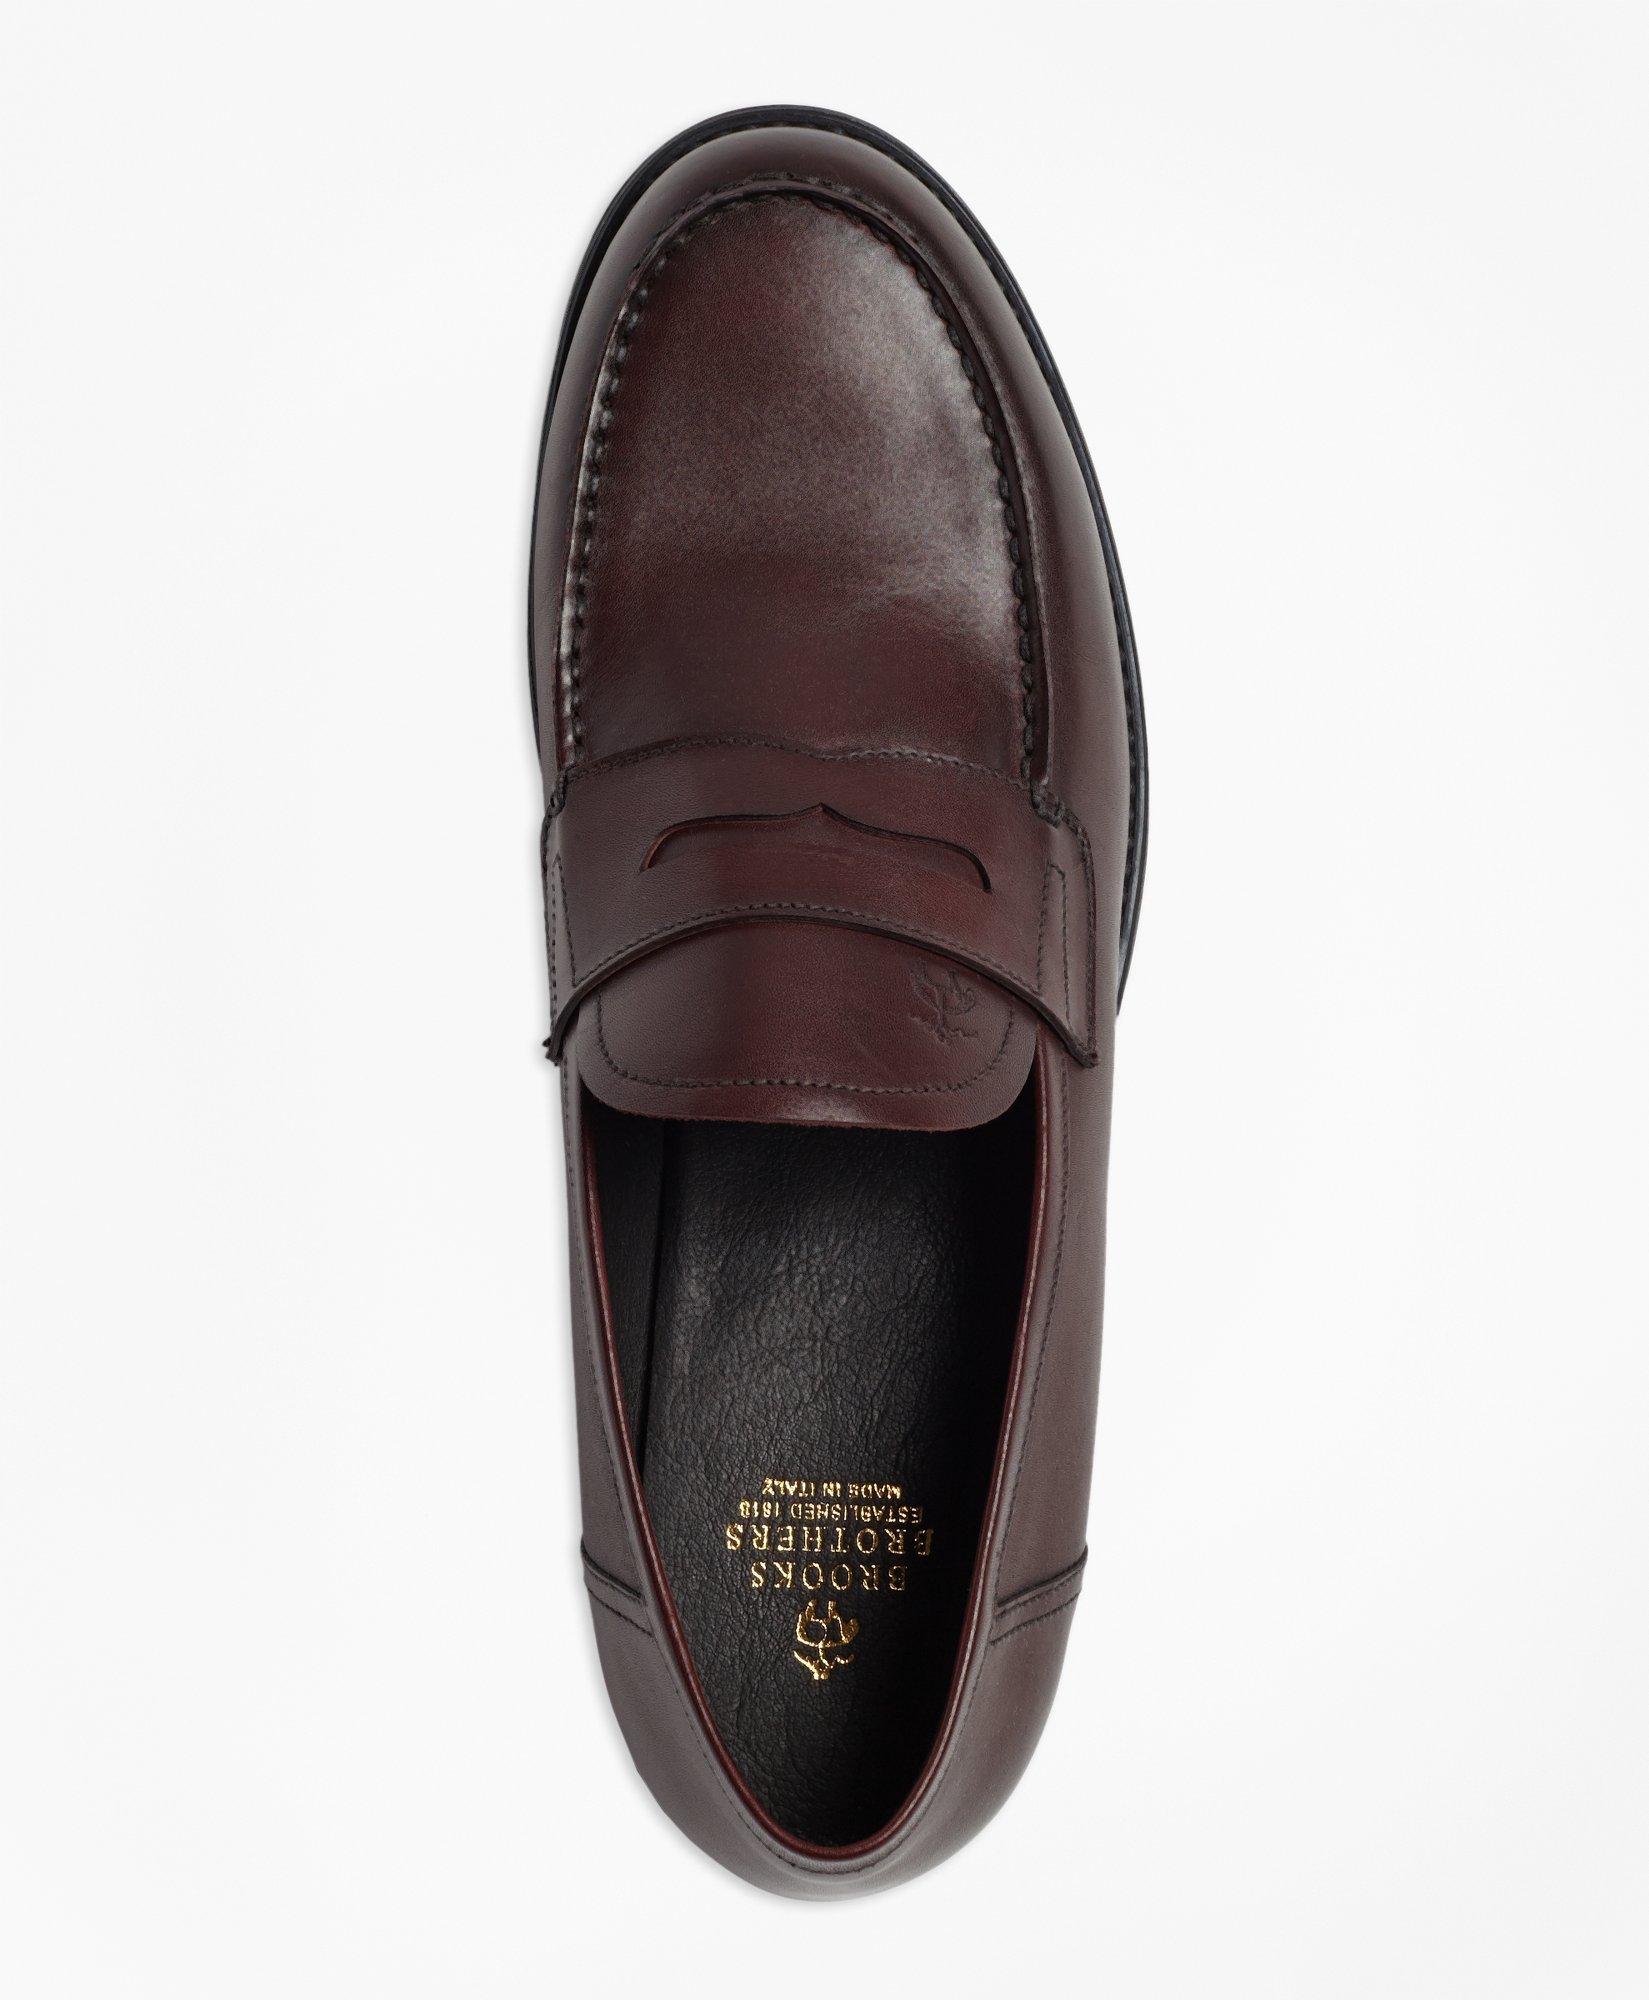 overskridelsen Torden fordelagtige 1818 Footwear Rubber-Sole Leather Penny Loafers